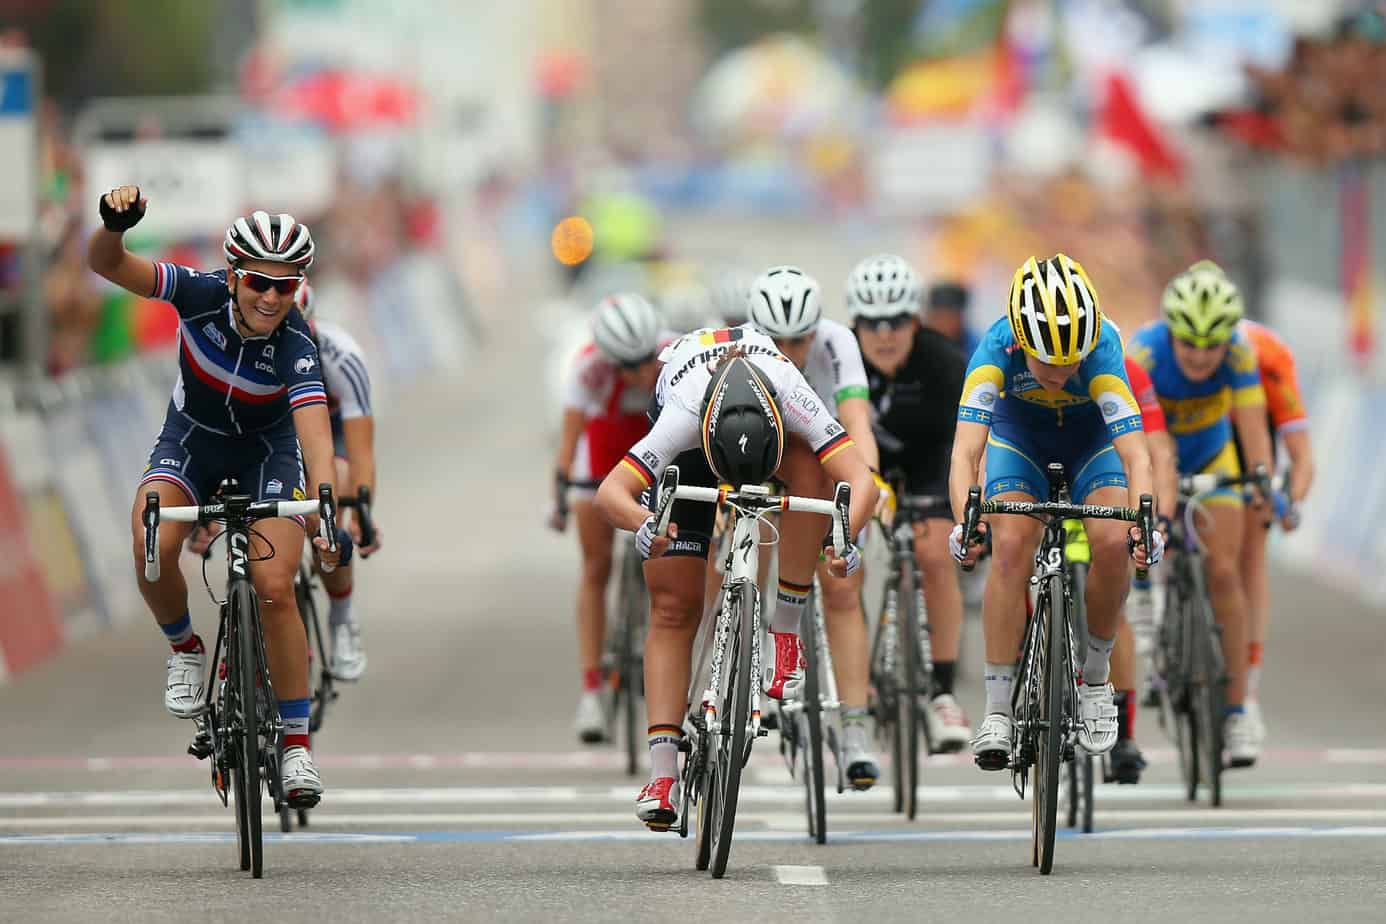 Campeonato del mundo de ruta UCI - Ciclismo - Cuotas de apuestas y vista previa